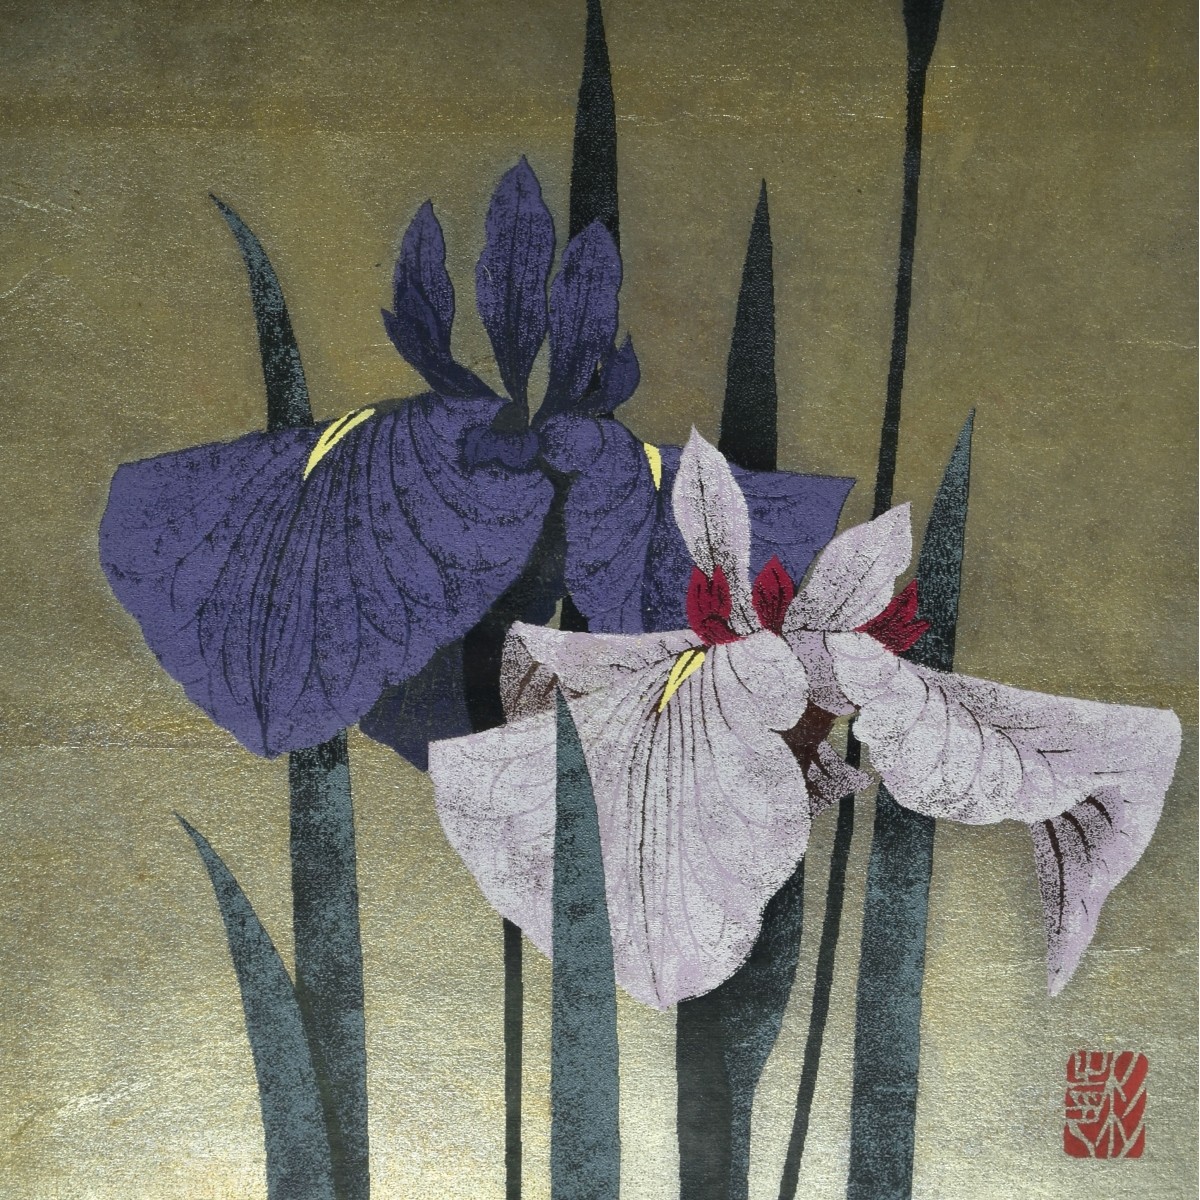 Katzutoshi Sugiura, Japanese (b. 1938)